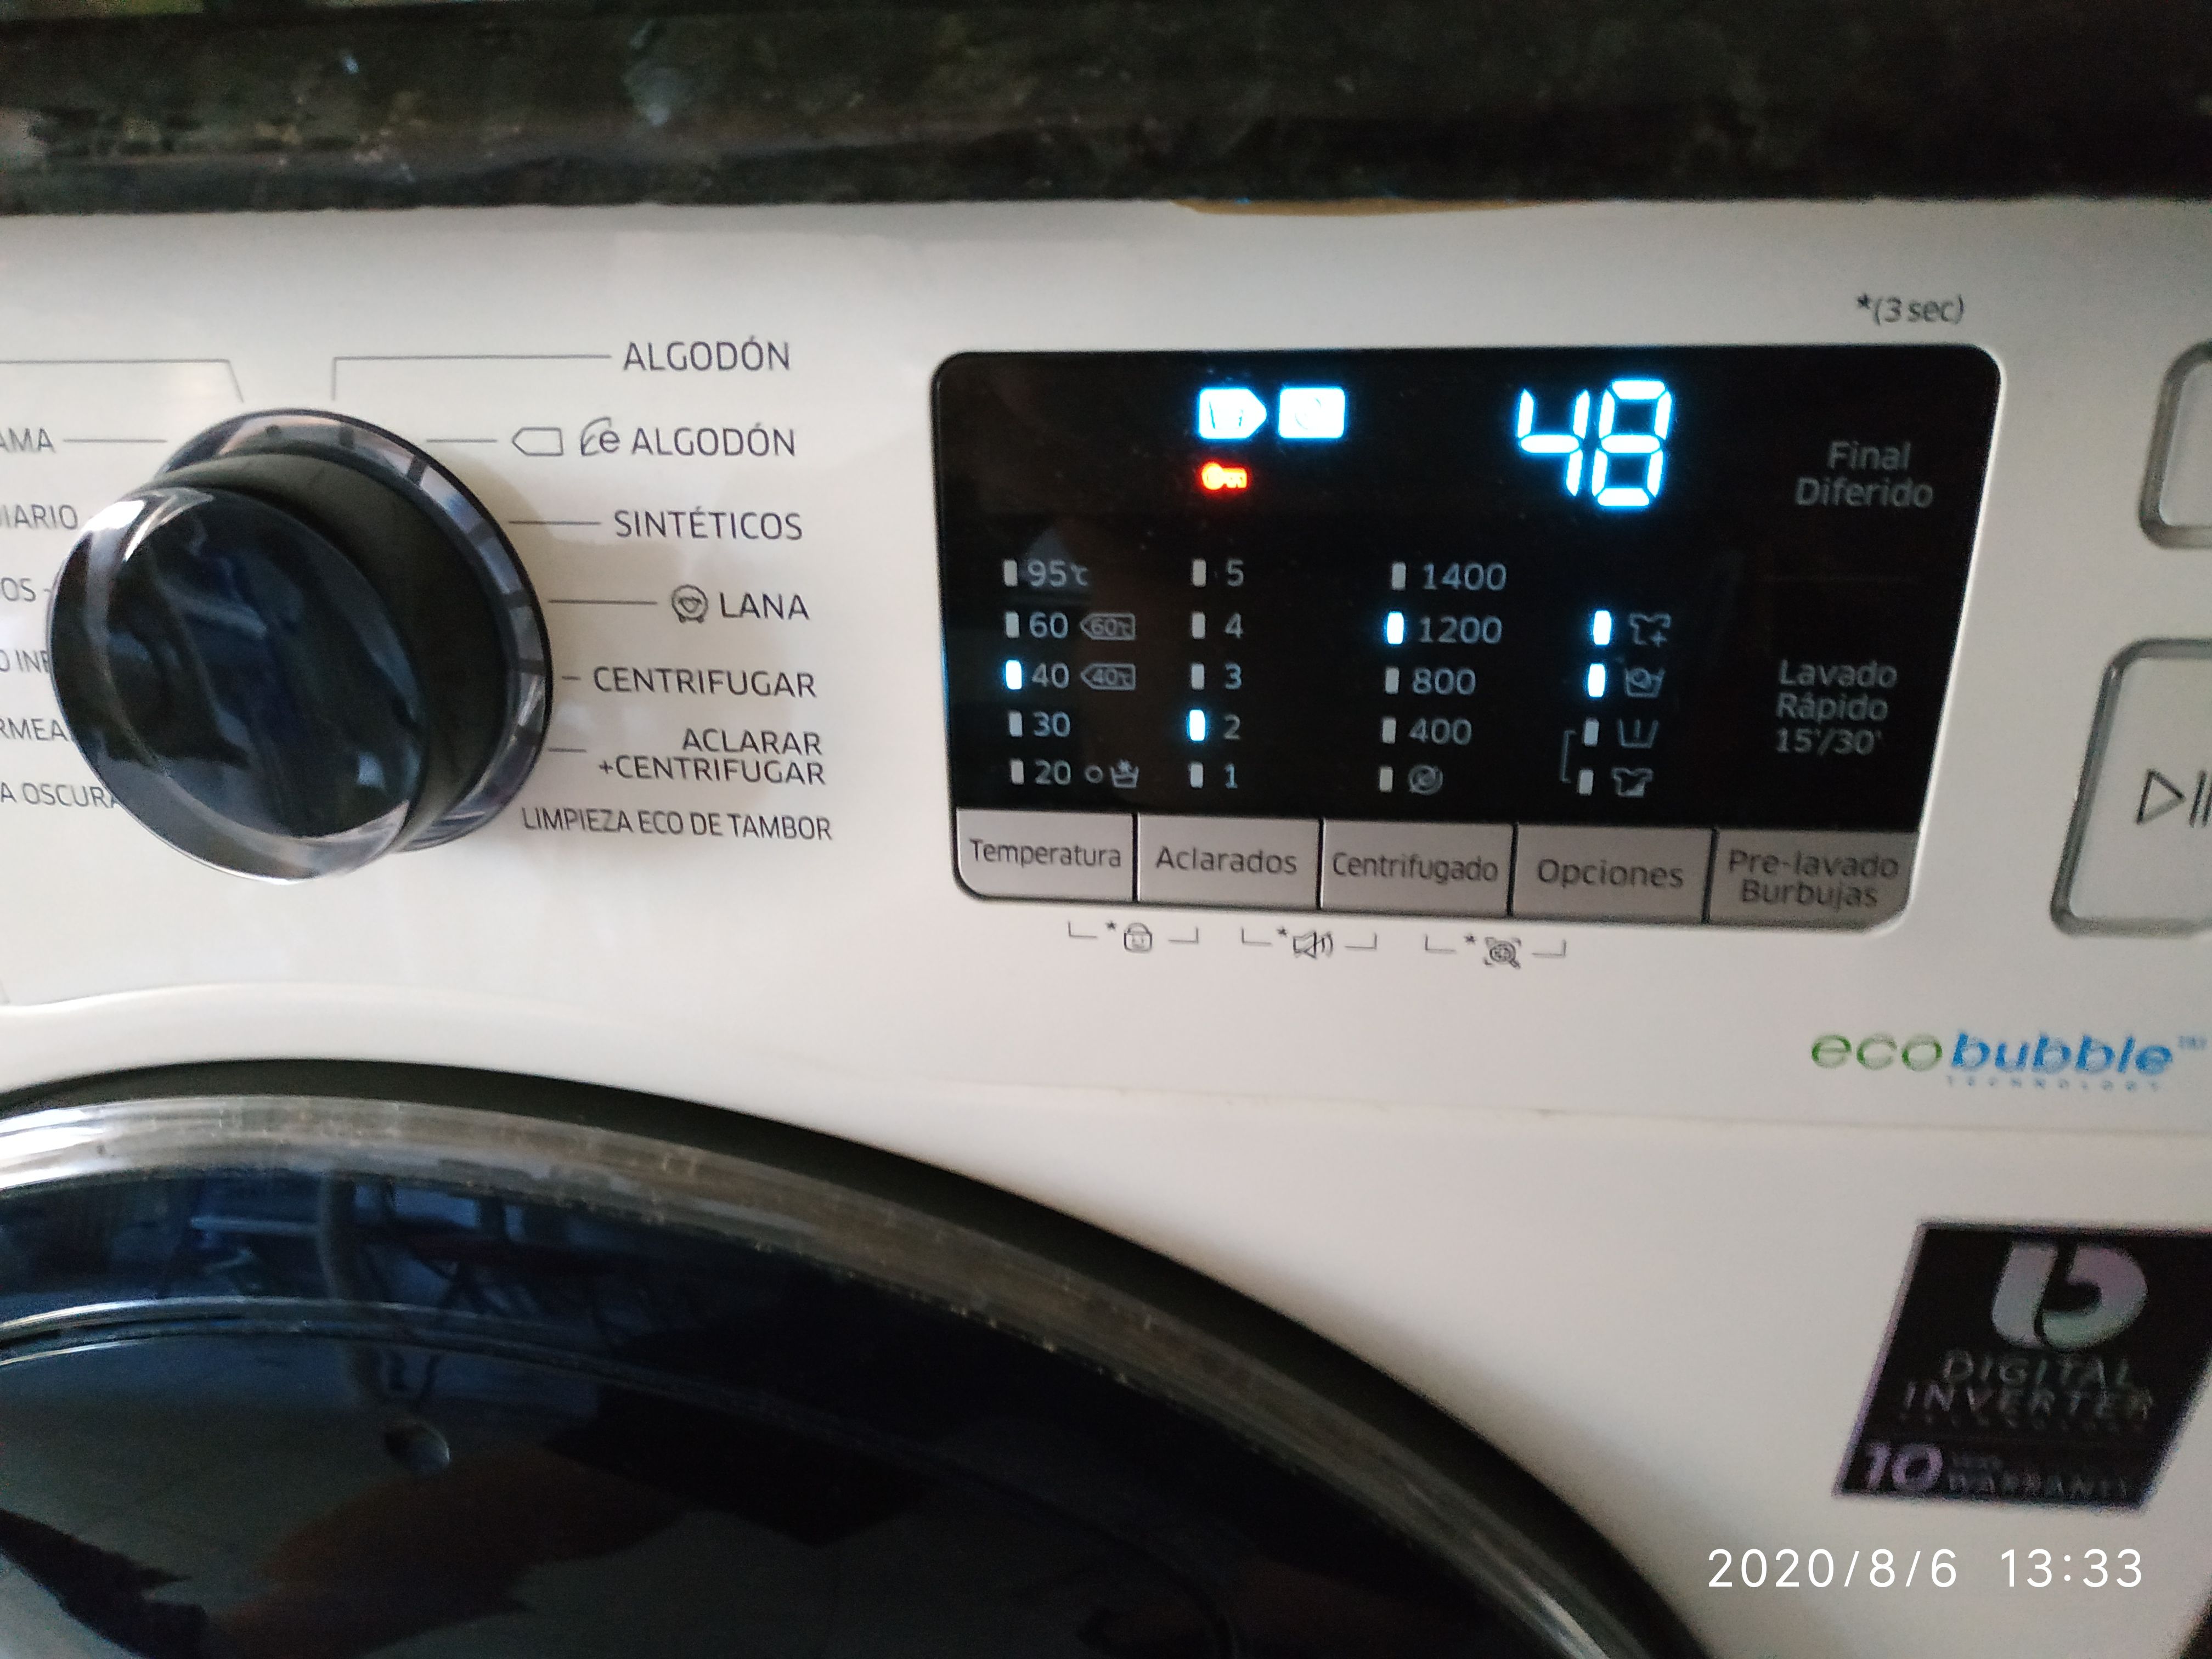 Solucionado: Añade el suavizante durante el lavado - Samsung Community